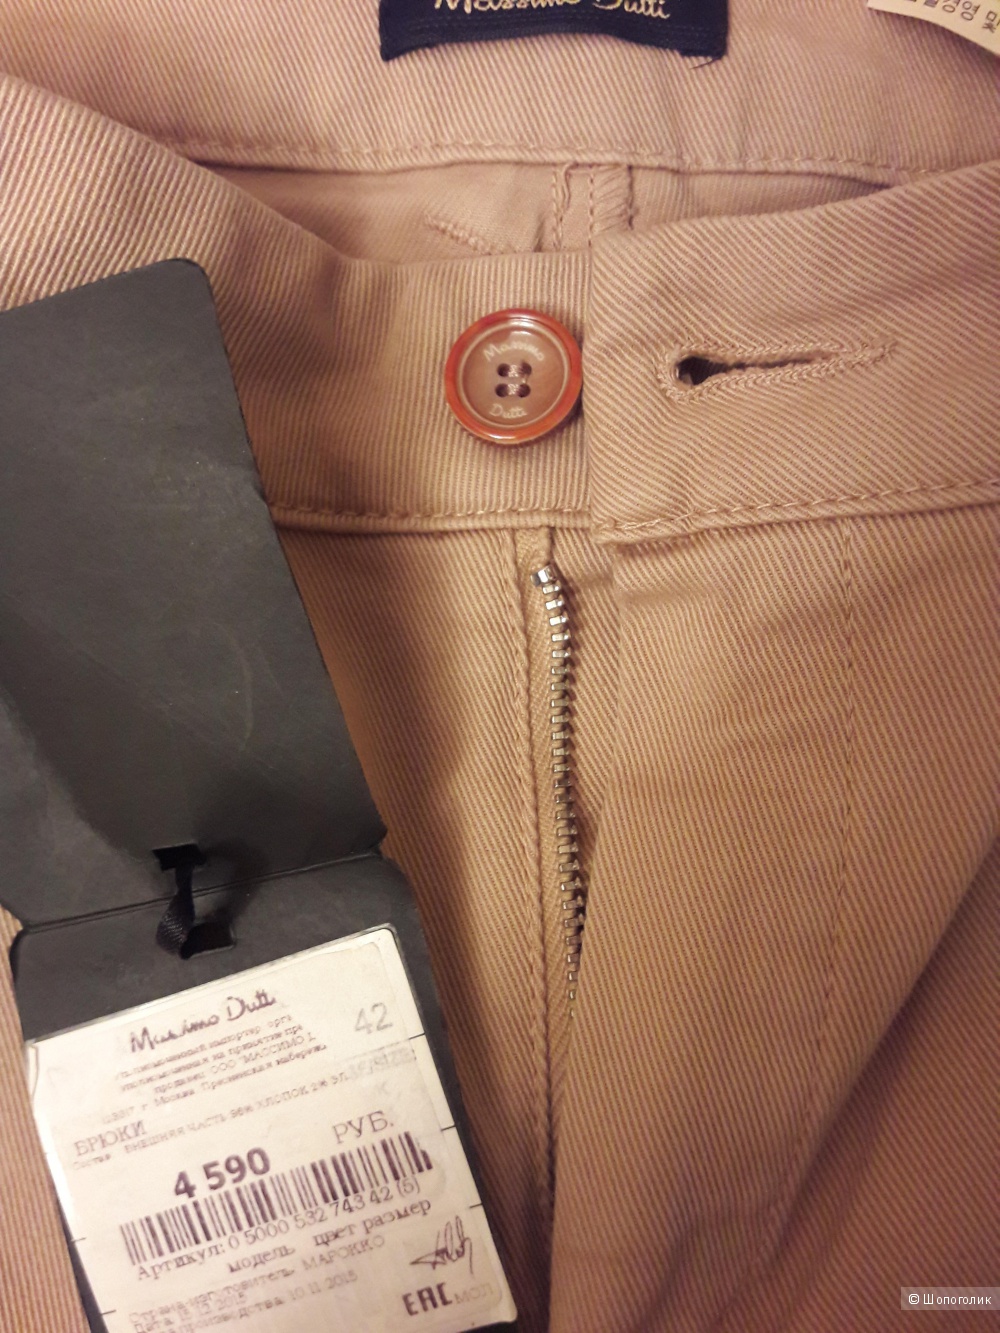 Massimo Dutti: хлопковые брюки-стрейч клеш, 42 евро